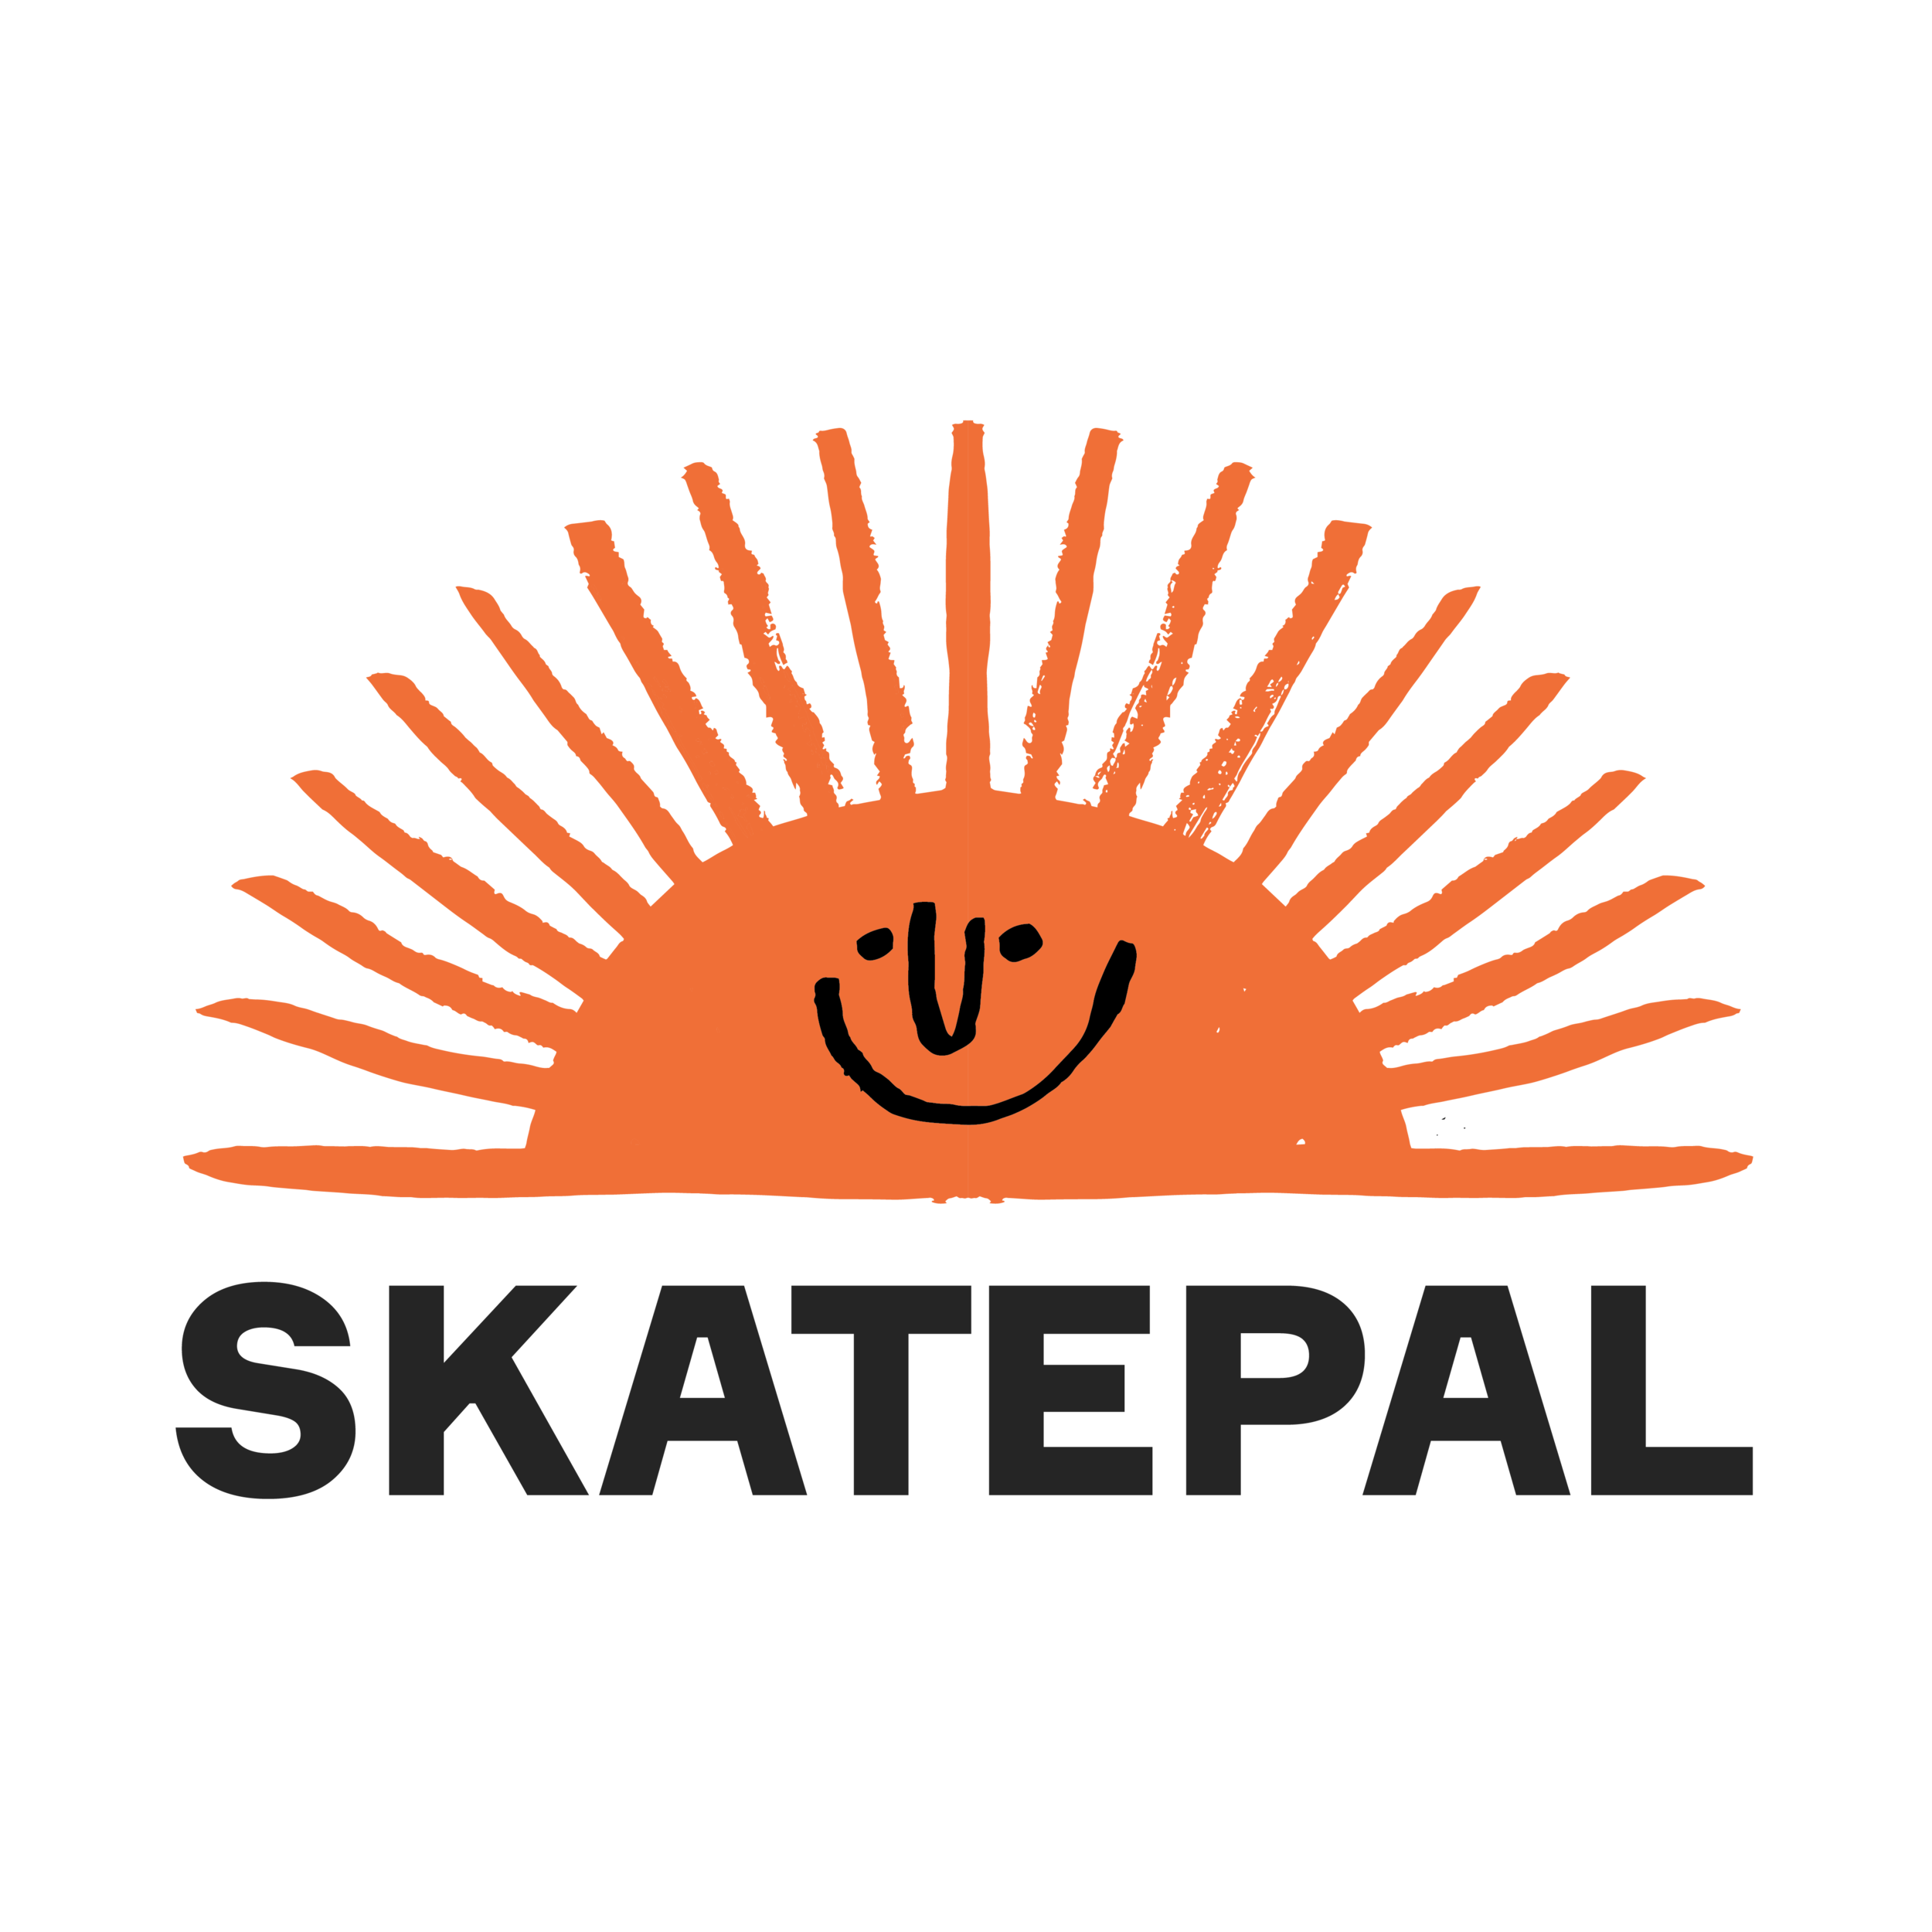 Skatepal logo